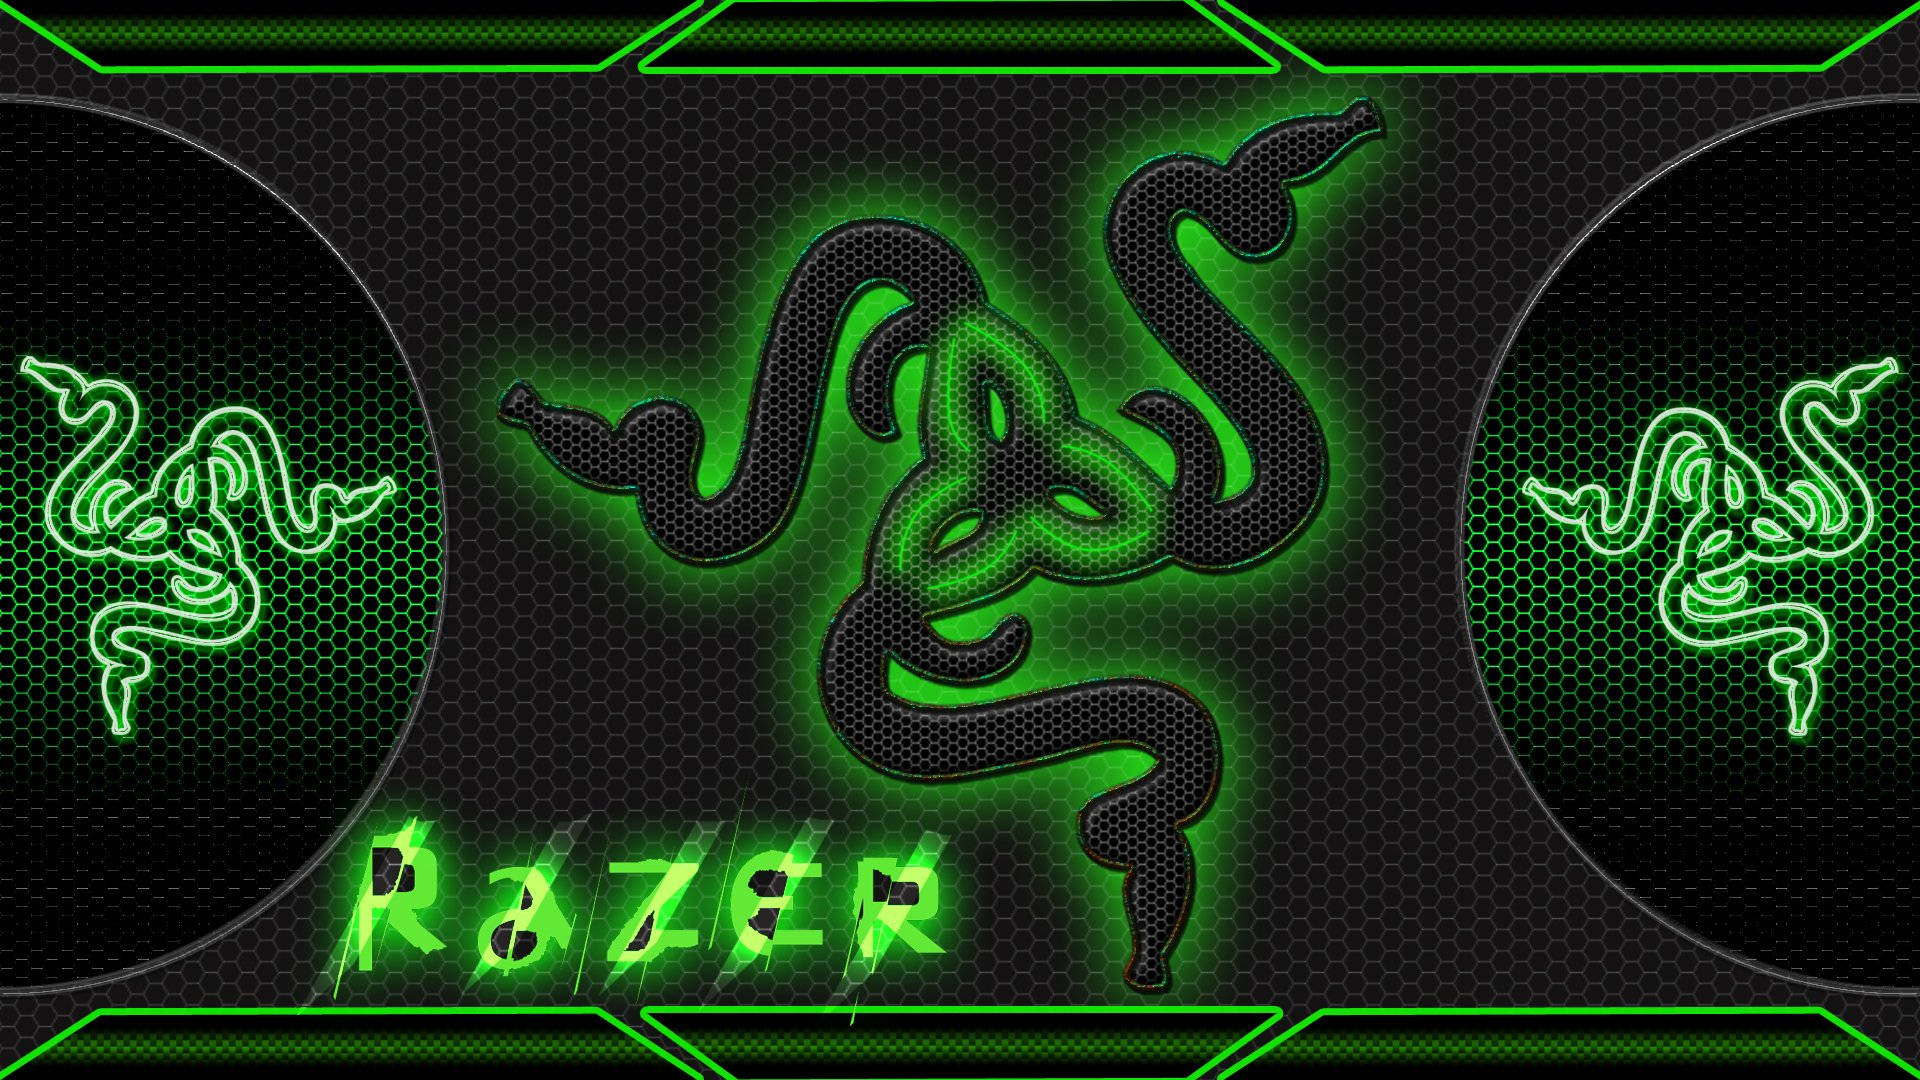 Đối với những ai yêu thích màu sắc xanh lá cây, hình nền Razer PC xanh chắc chắn sẽ làm bạn mê mẩn. Với thiết kế độc đáo và phù hợp với các thiết bị Razer, bộ sưu tập hình nền này còn là một sự lựa chọn tuyệt vời cho người dùng đam mê game.